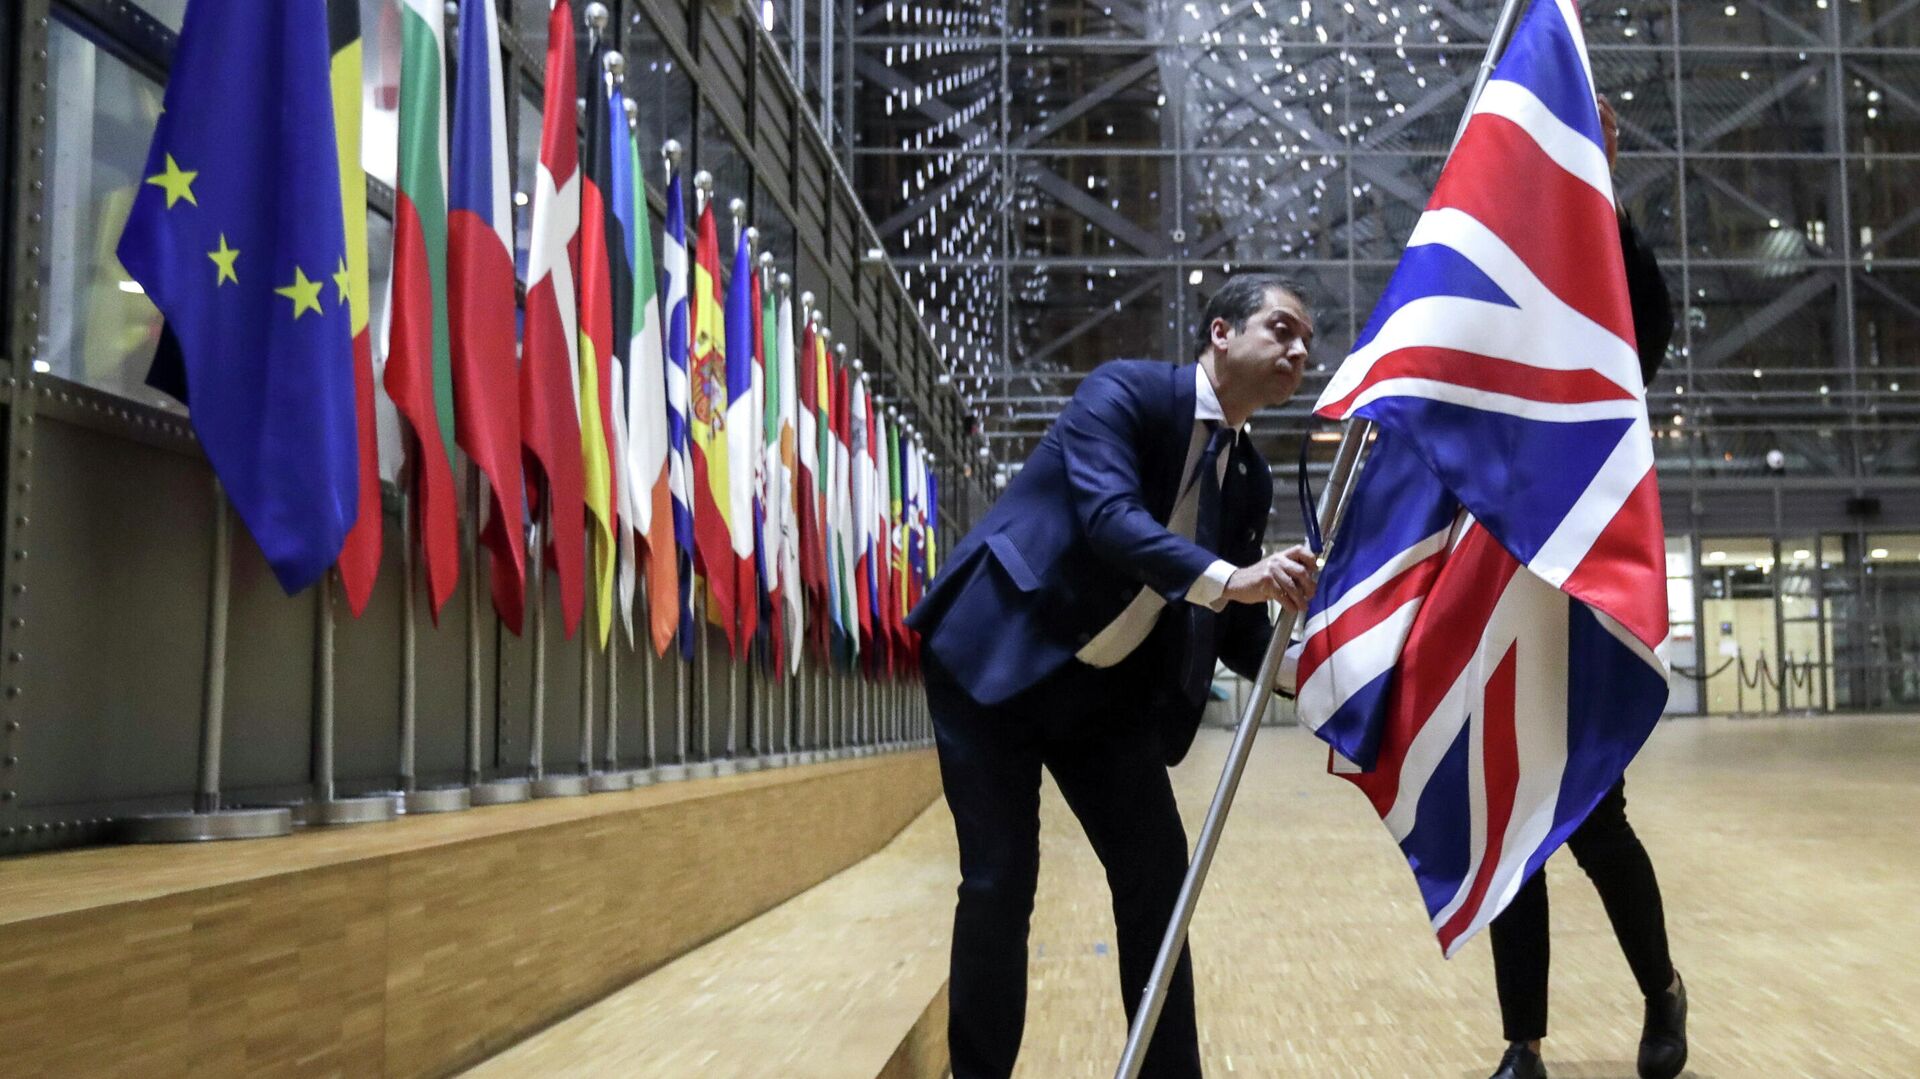 Сотрудники протокола убирают флаг Великобритании у здания Европы в Брюсселе - РИА Новости, 1920, 30.12.2020